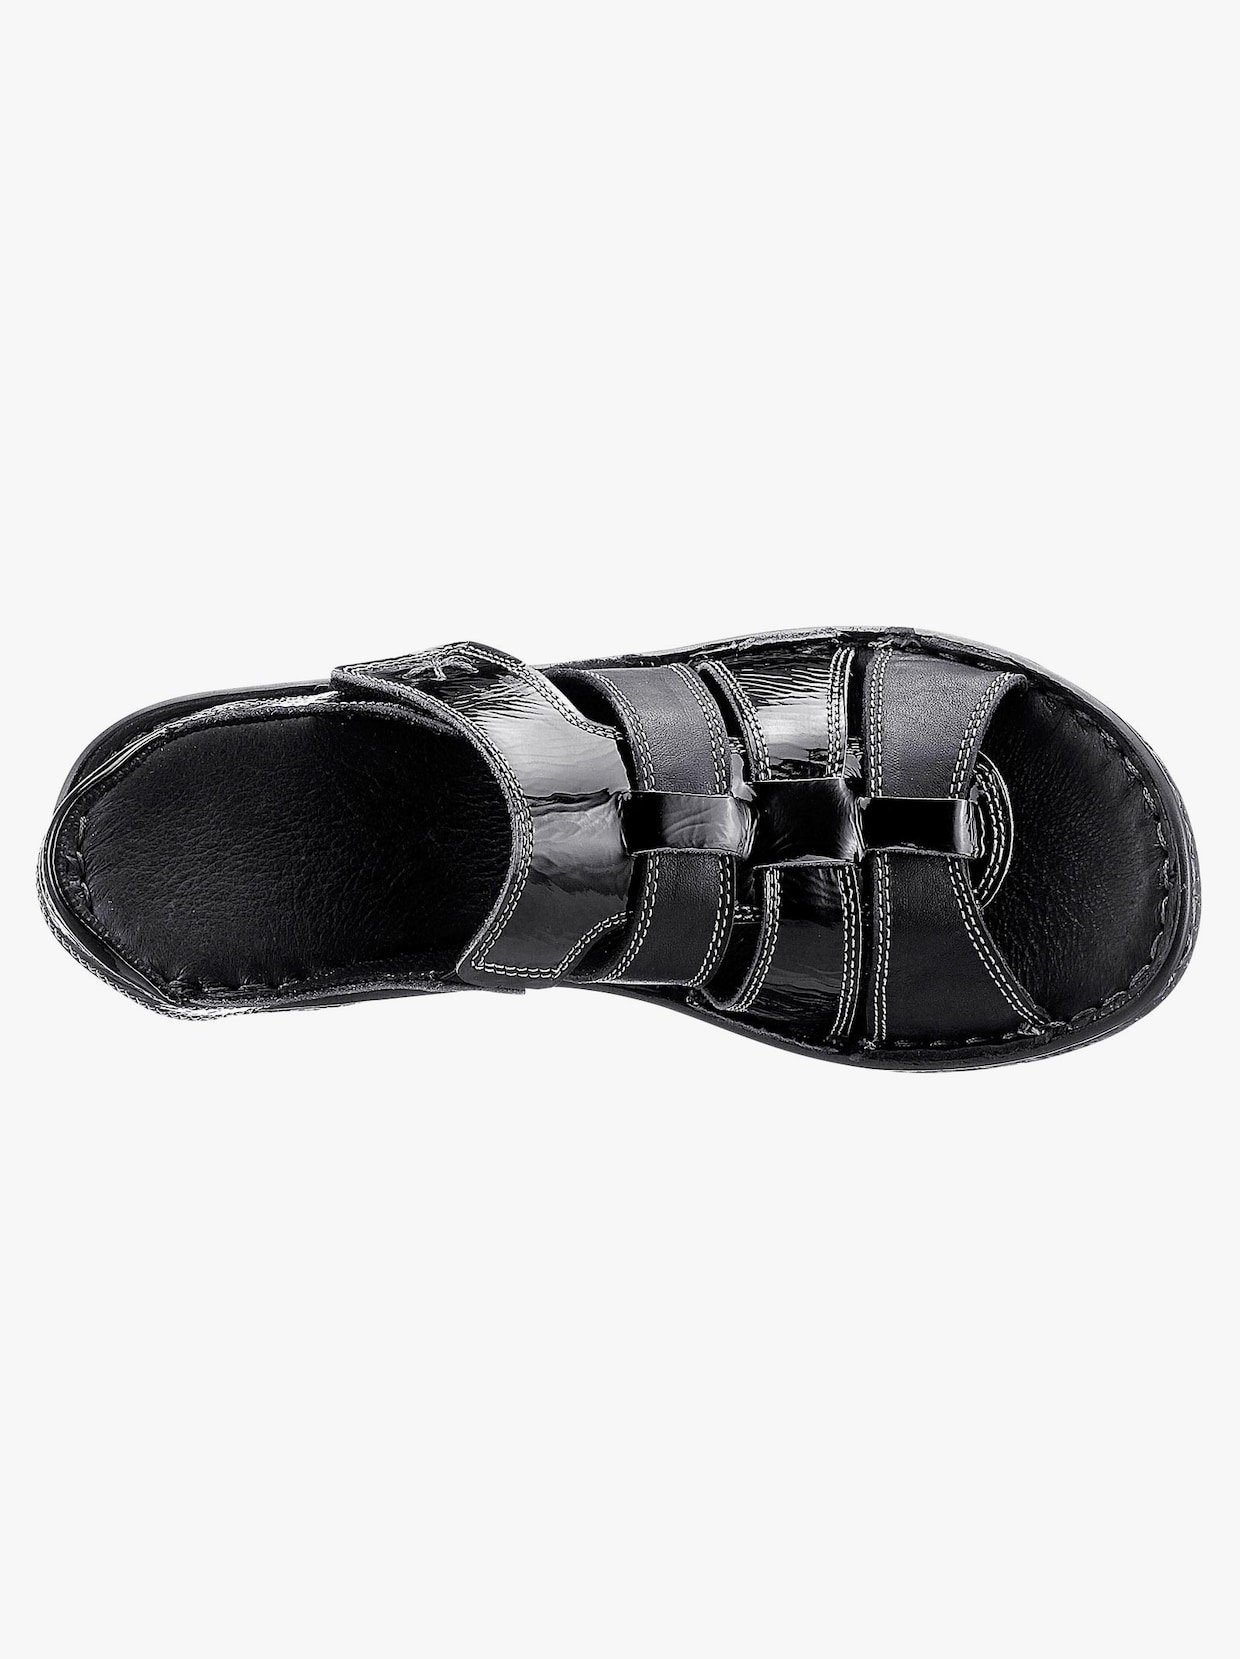 Airsoft Sandale - schwarz